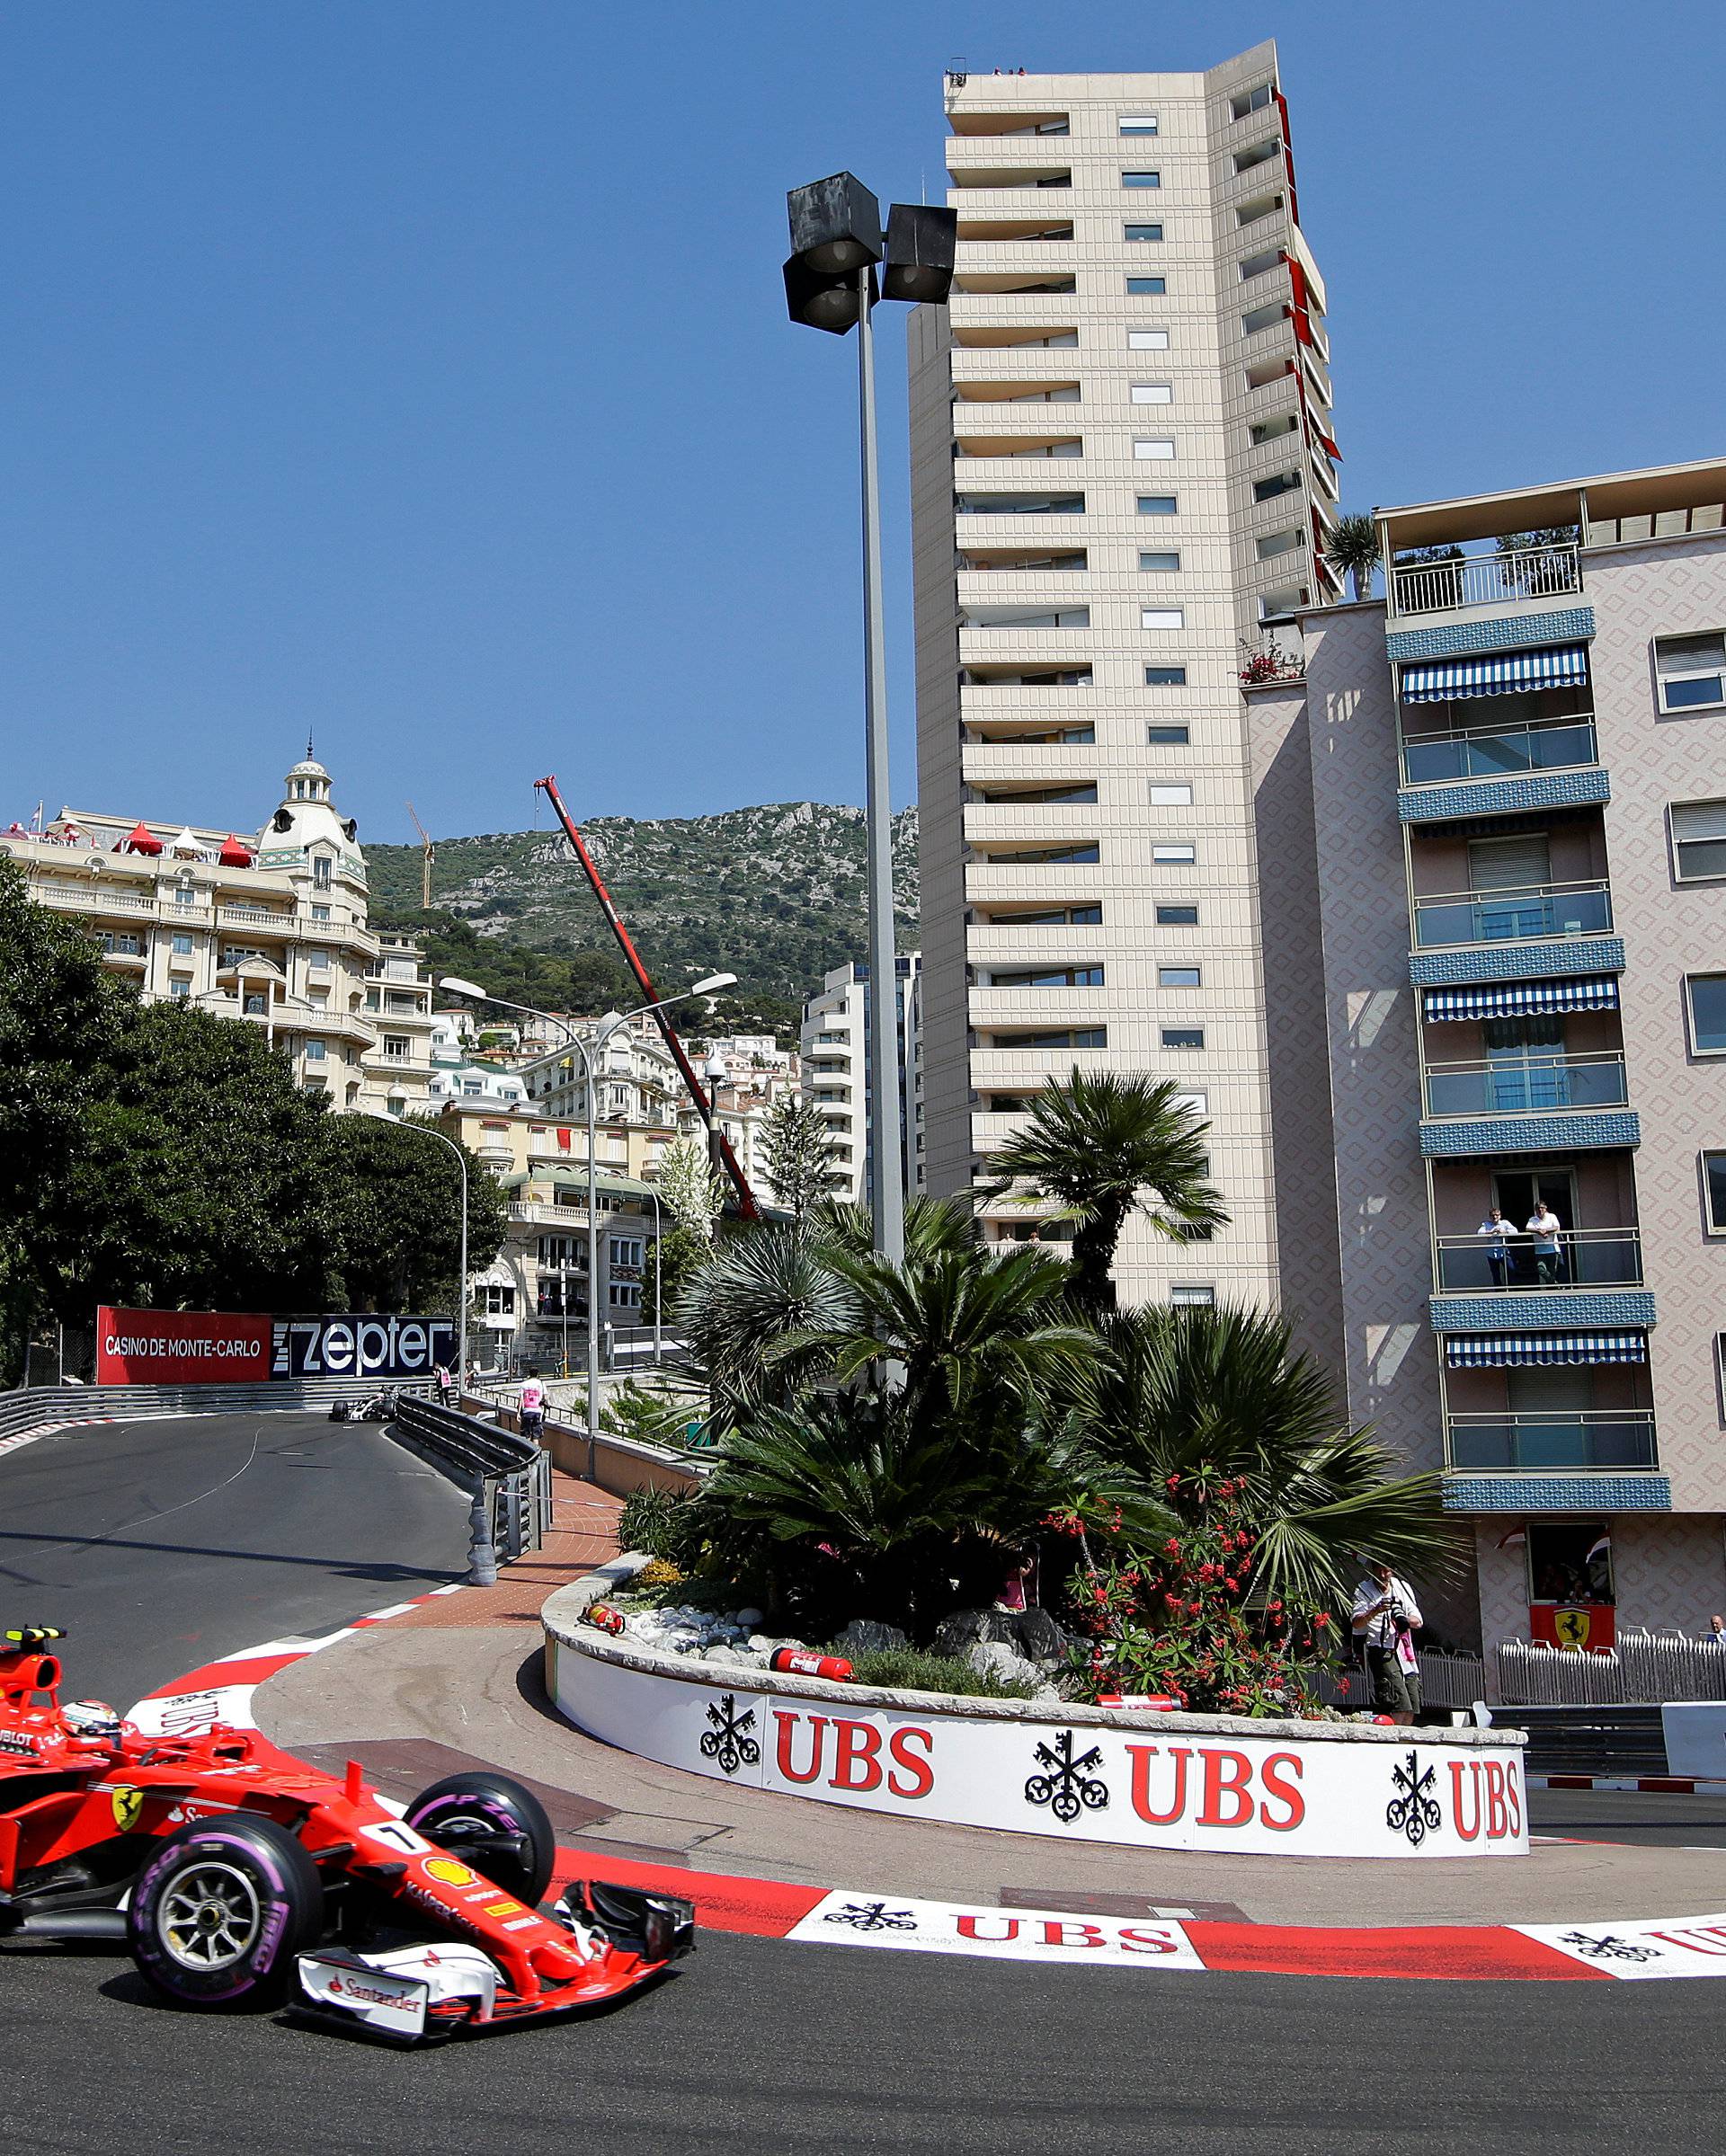 Formula One - F1 - Monaco Grand Prix